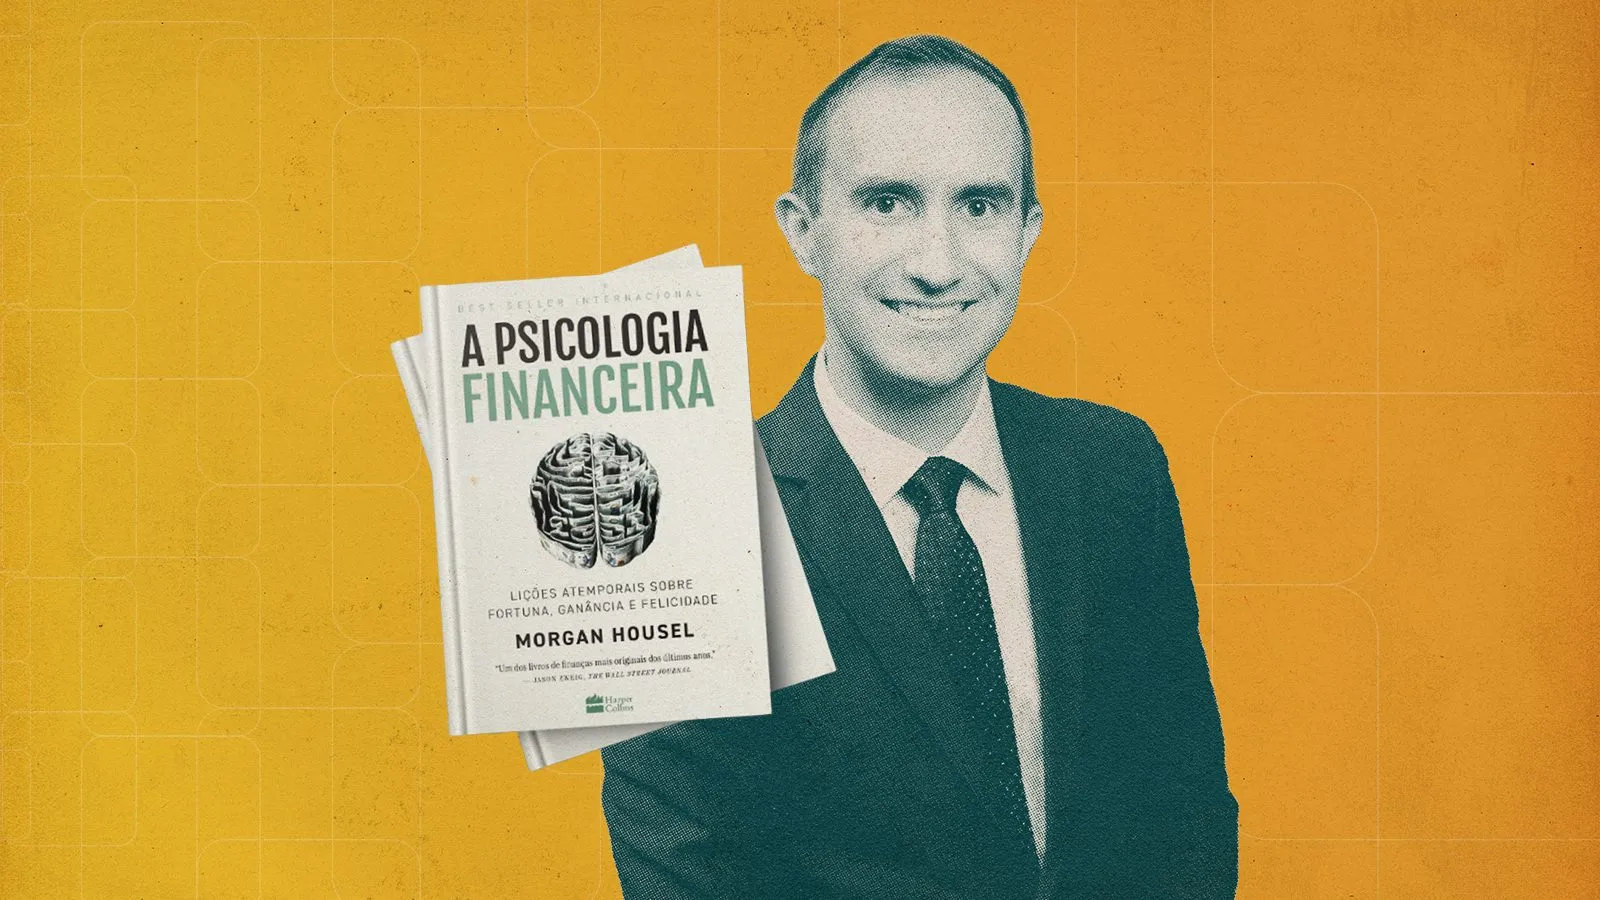 Morgan Housel explora de maneira cativante a relação entre psicologia e finanças, fornecendo histórias e insights que irão transformar a maneira como você pensa sobre o dinheiro e os investimentos.